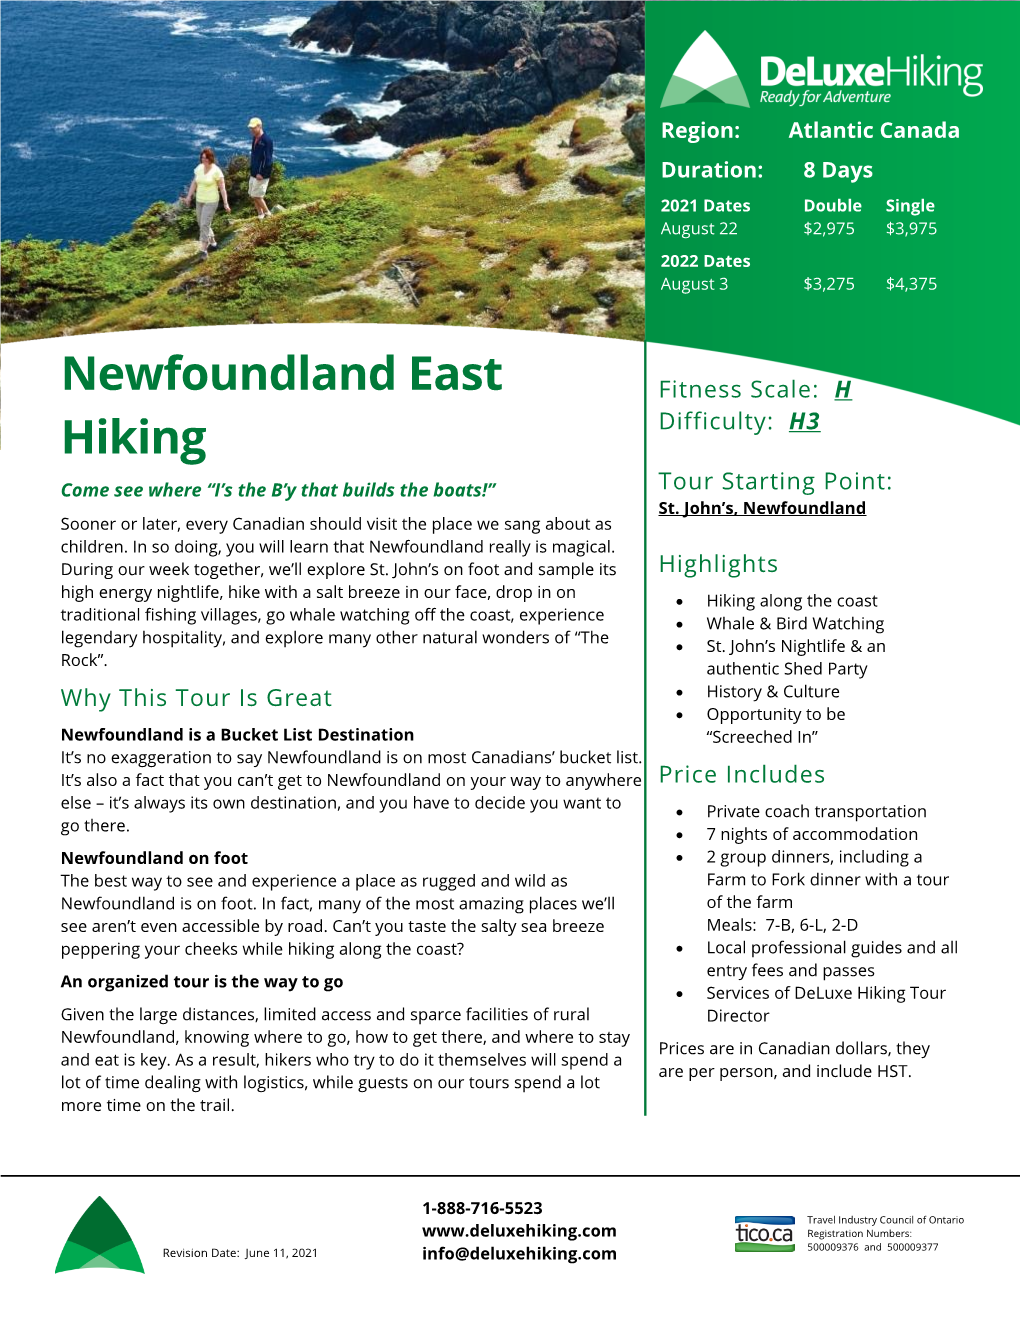 Newfoundland East Hiking